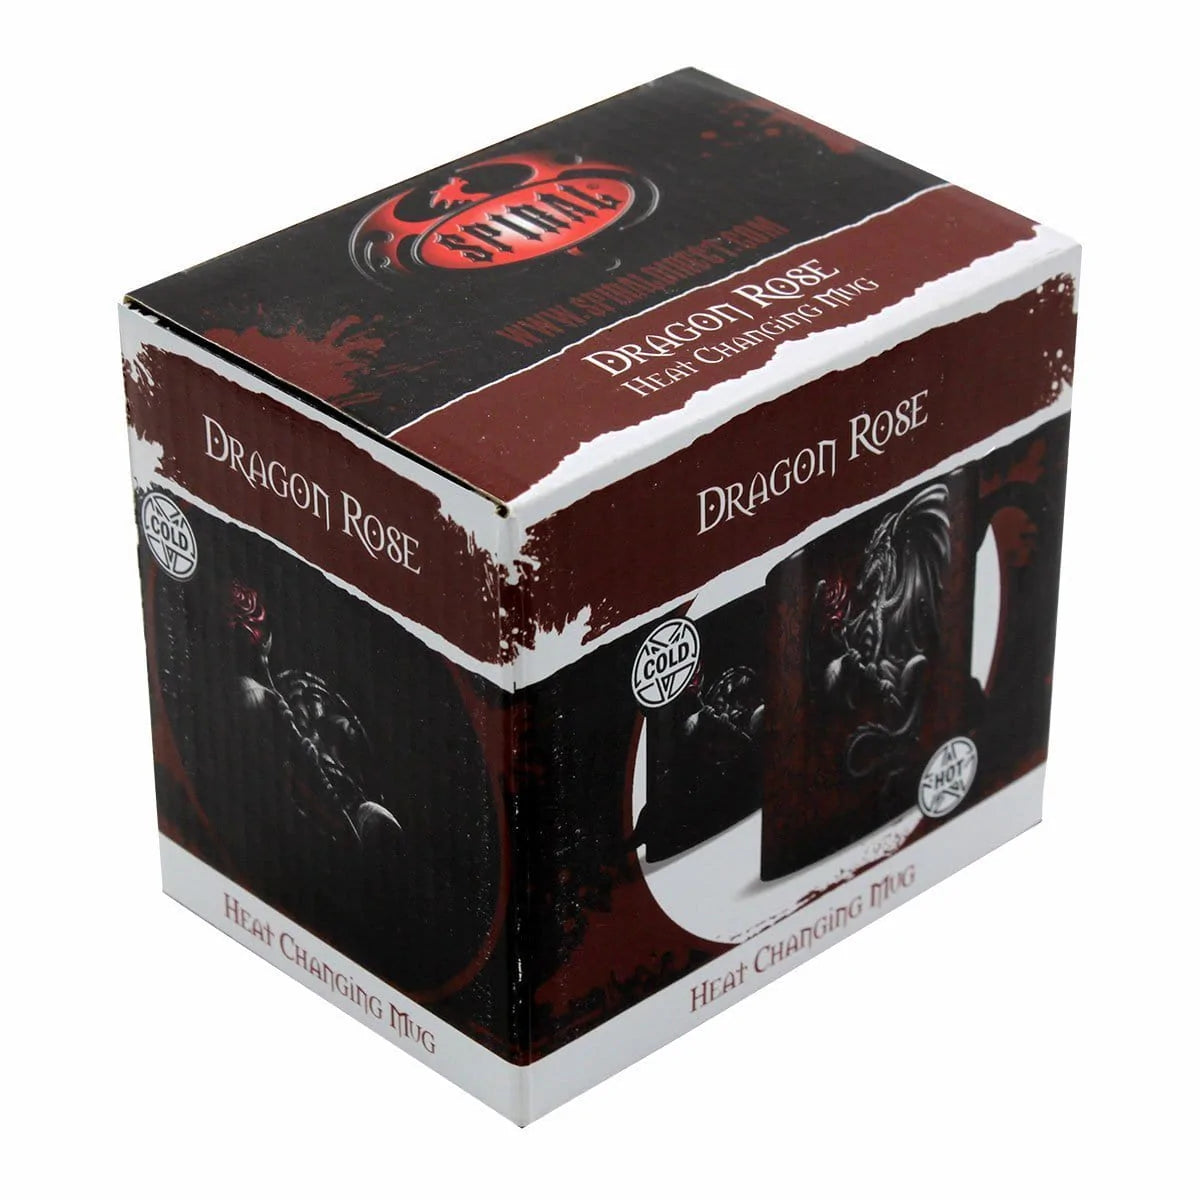 DRAGON ROSE - Keramische koffiemok met warmteverandering - Geschenkverpakking